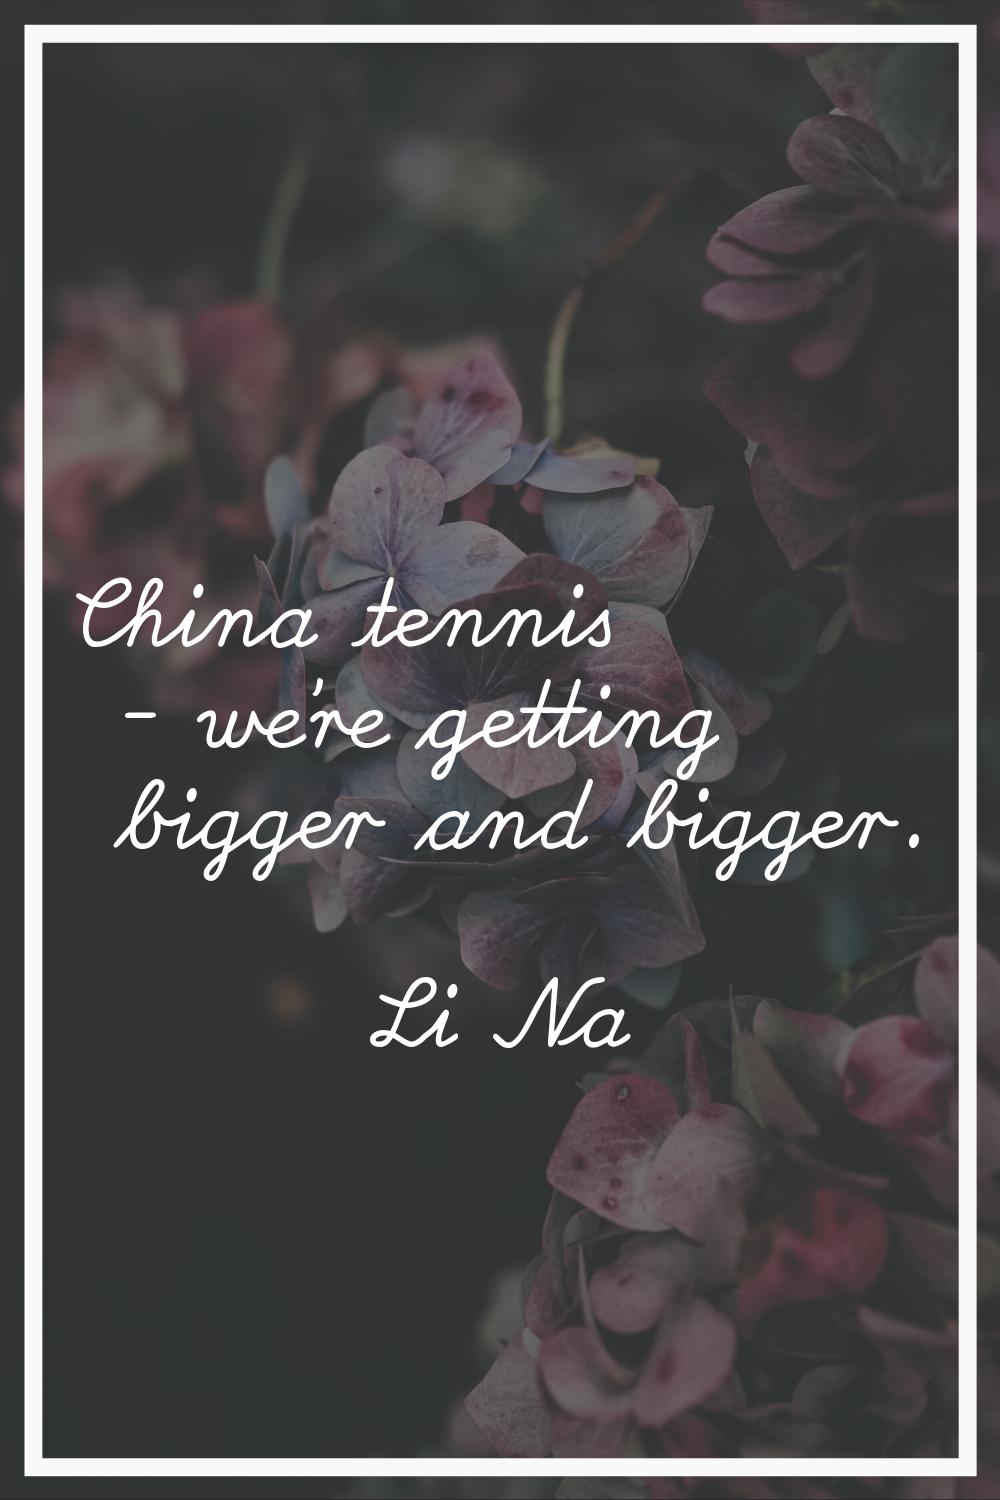 China tennis - we're getting bigger and bigger.